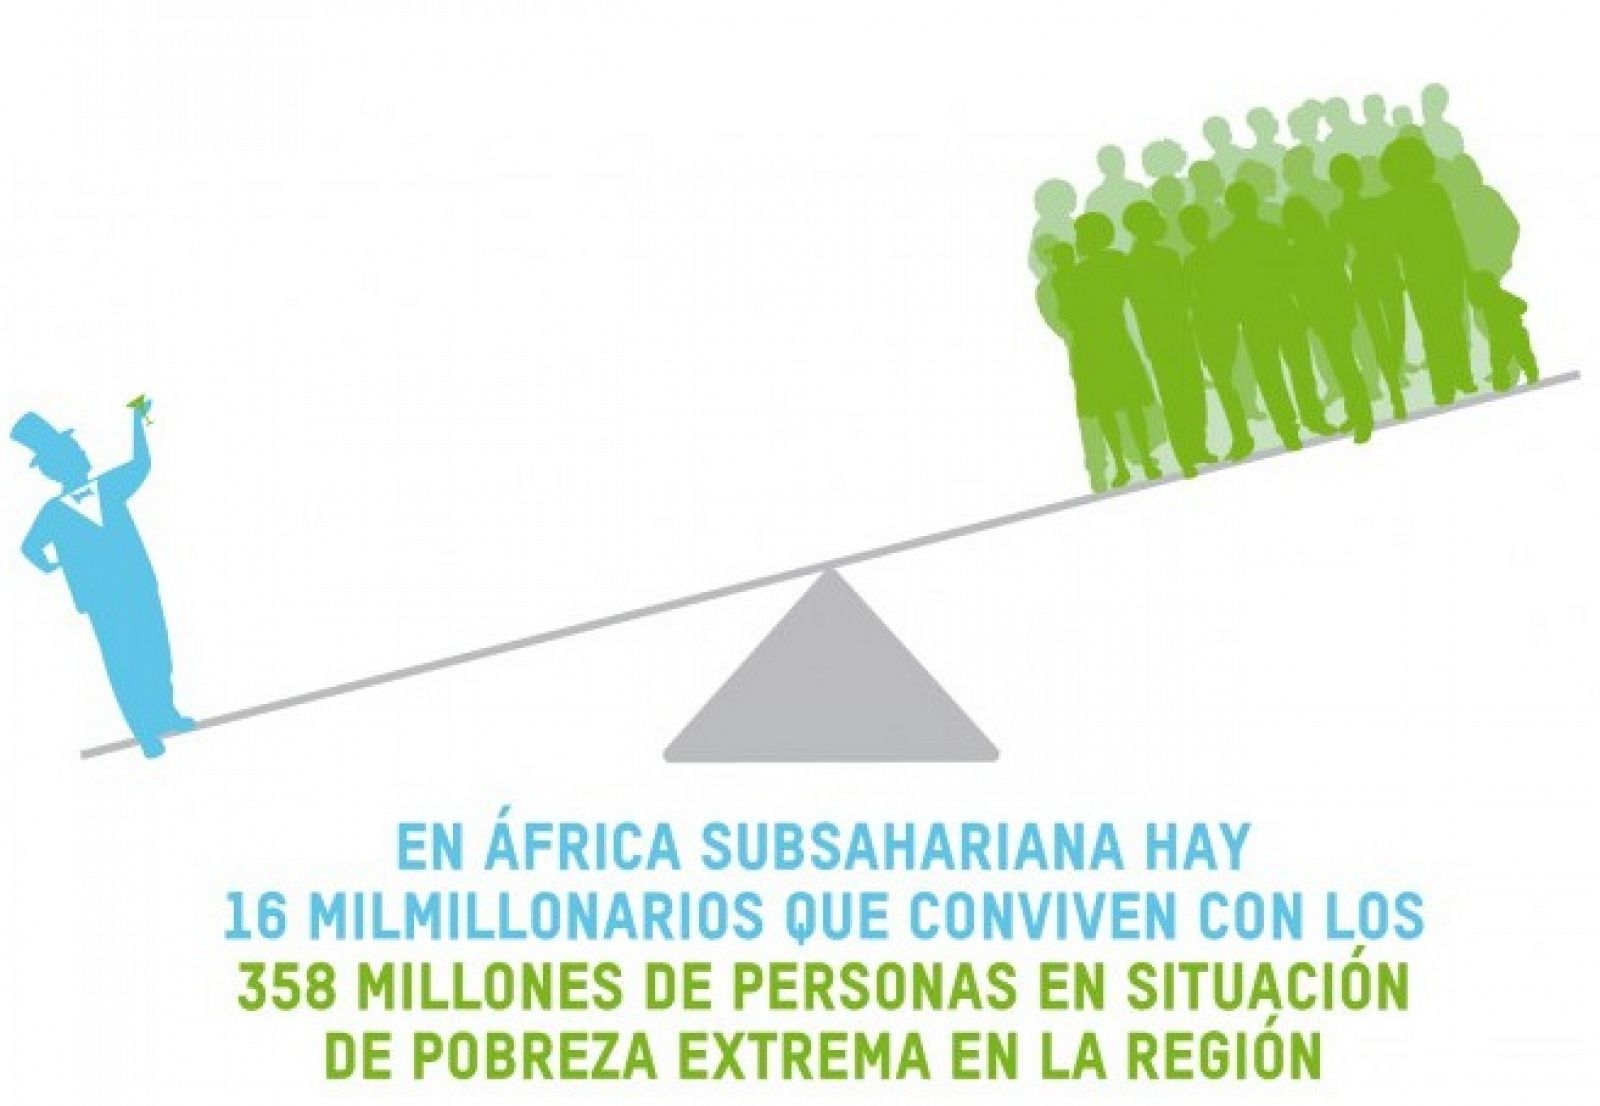 Intermón Oxfam organiza #IGUALES para concienciar sobre la desigual extrema